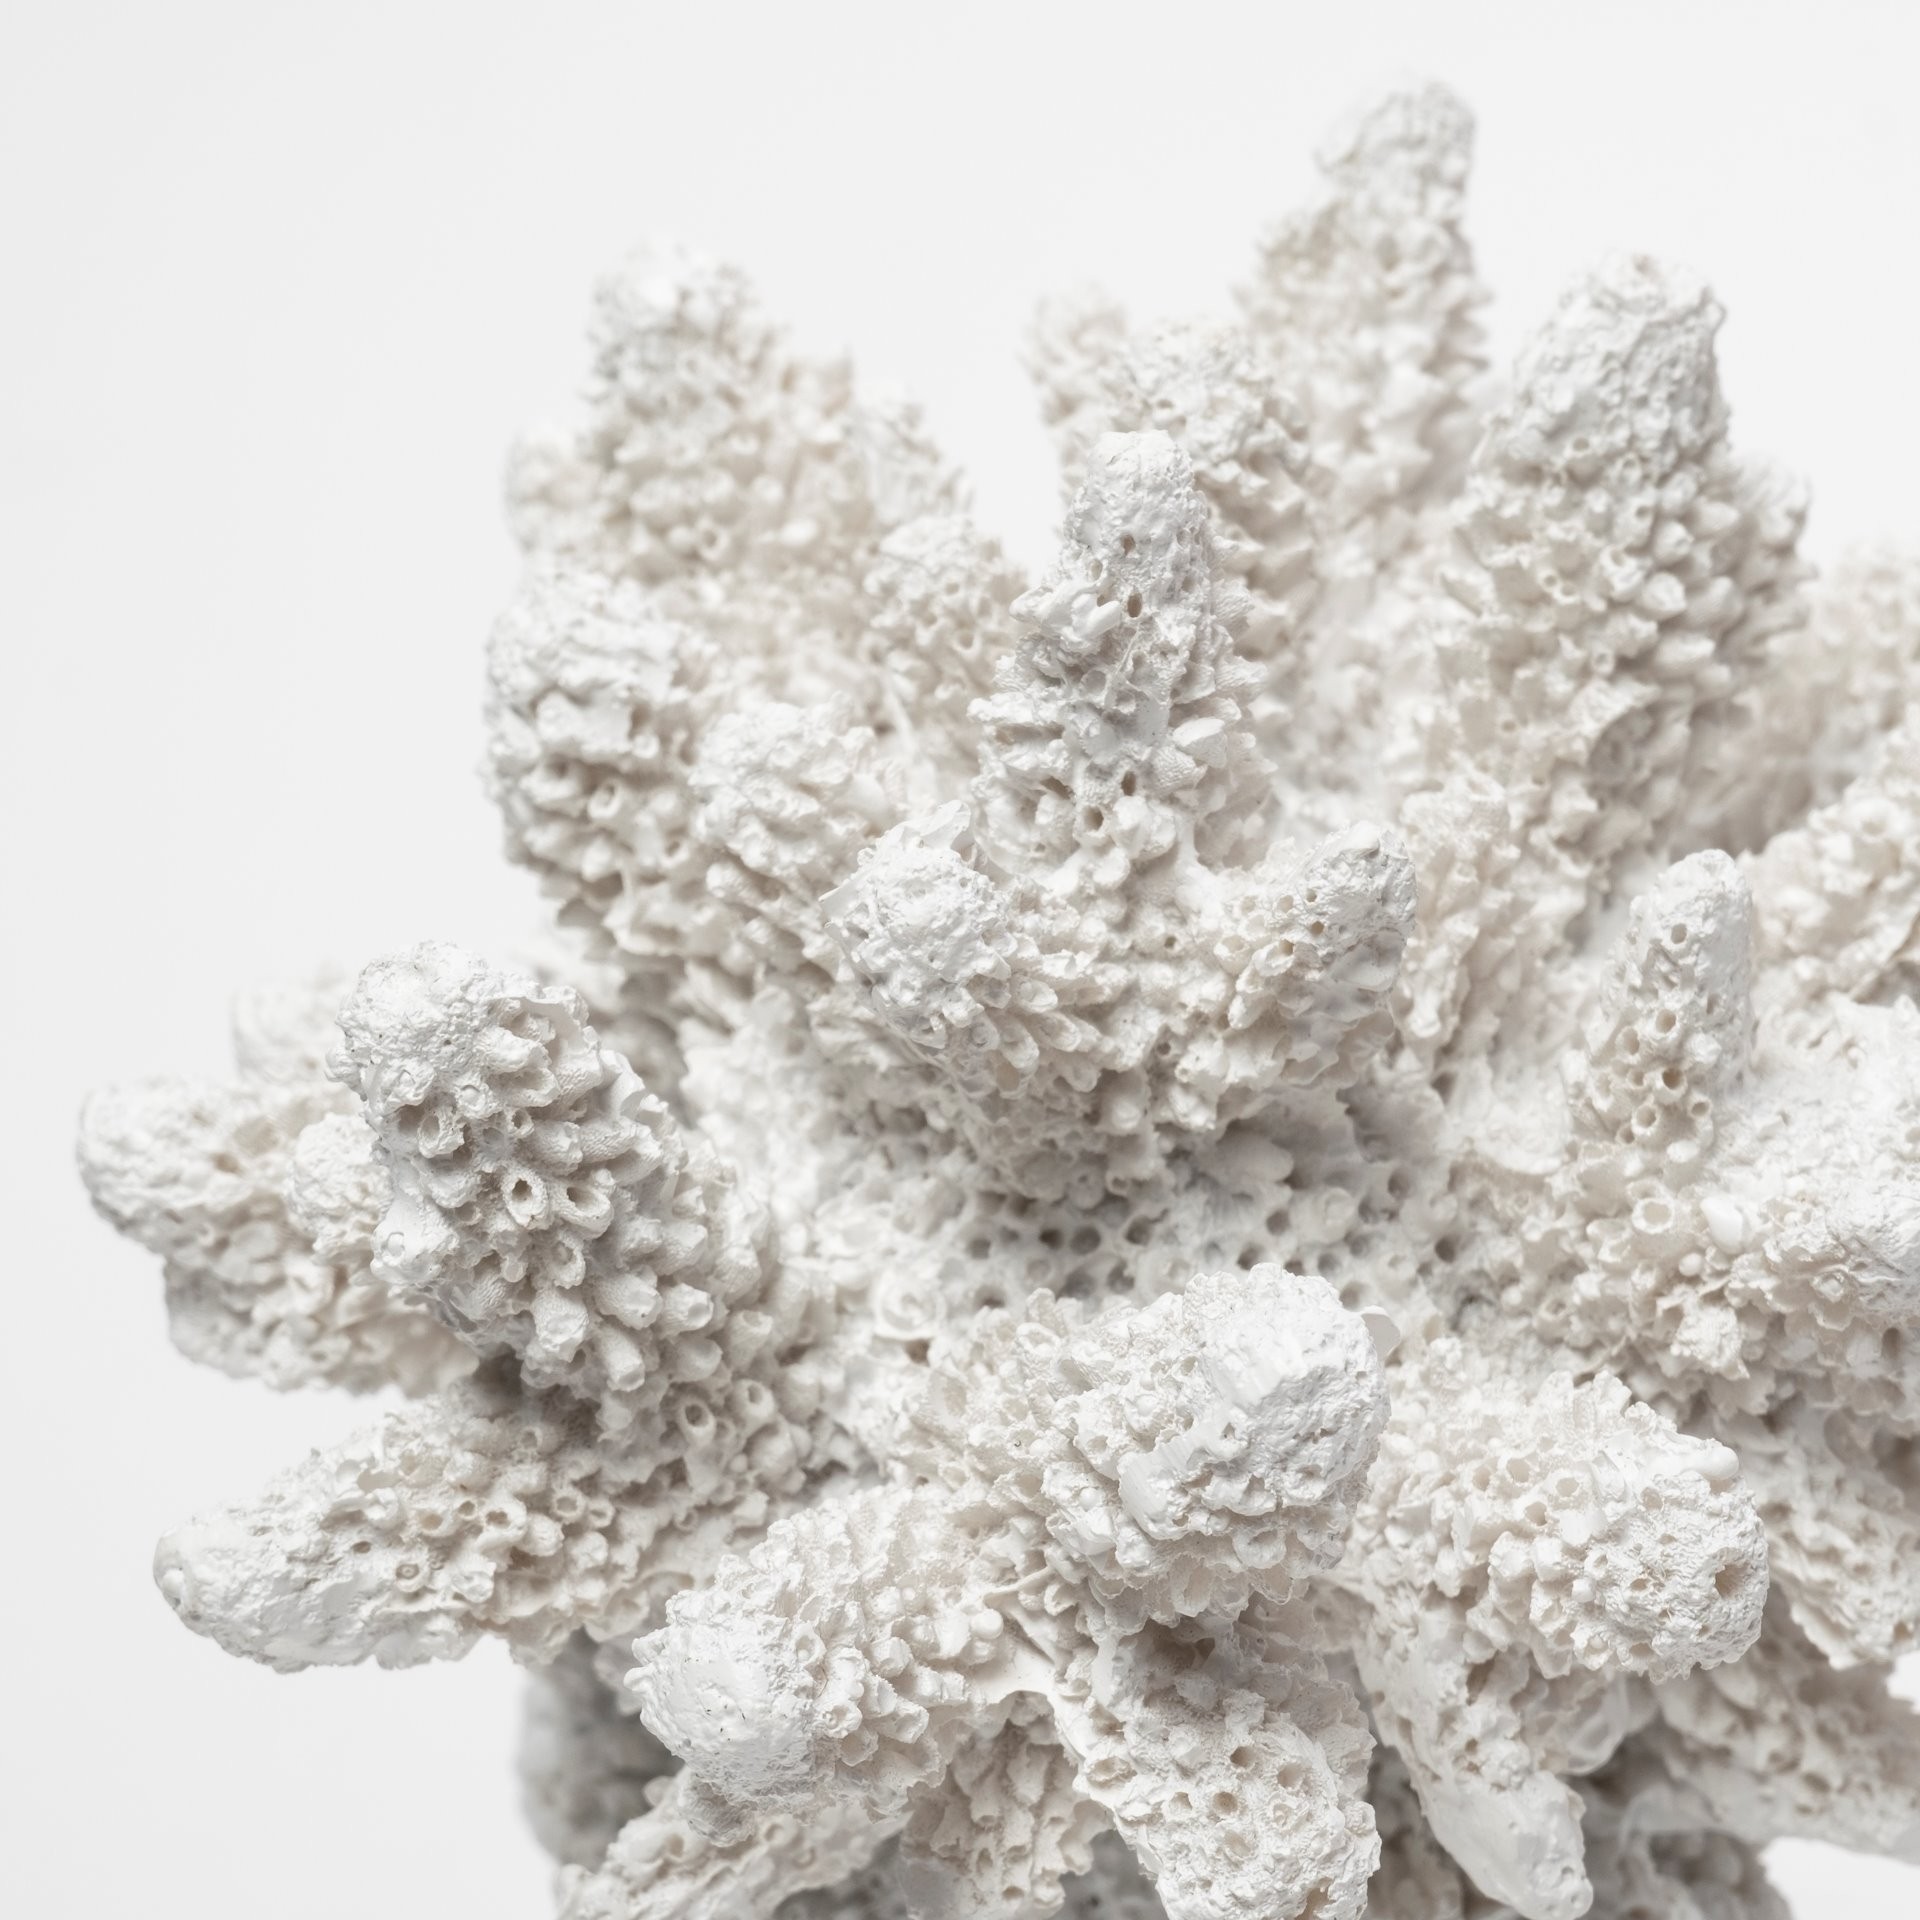 6" White Contempo Coral and Glass Sculpture